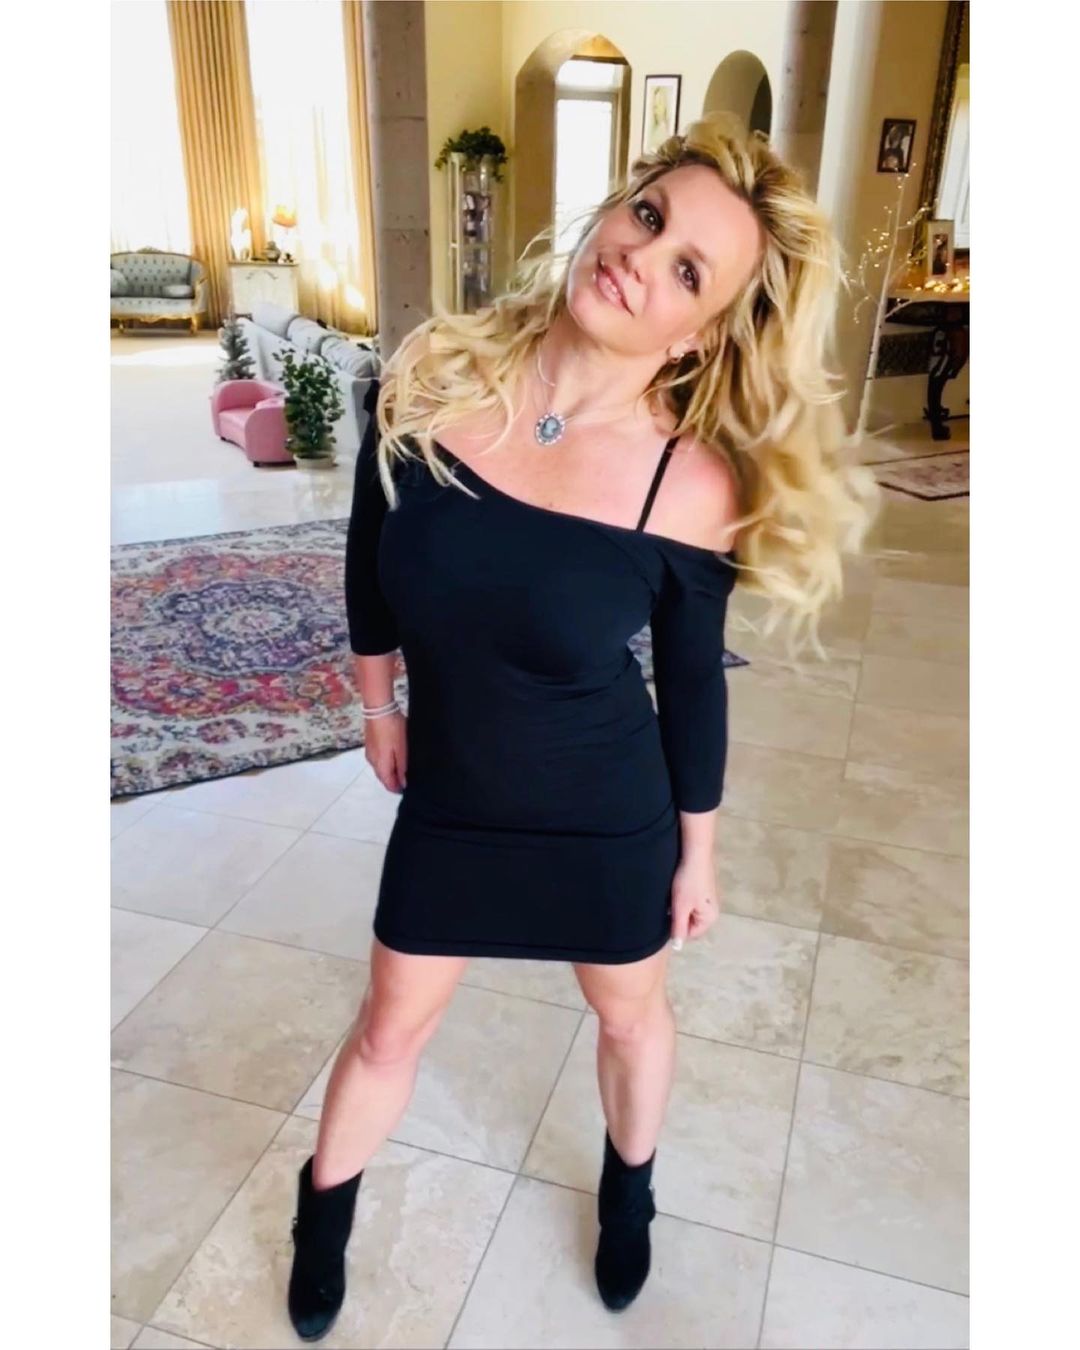 Elvetélt Britney Spears